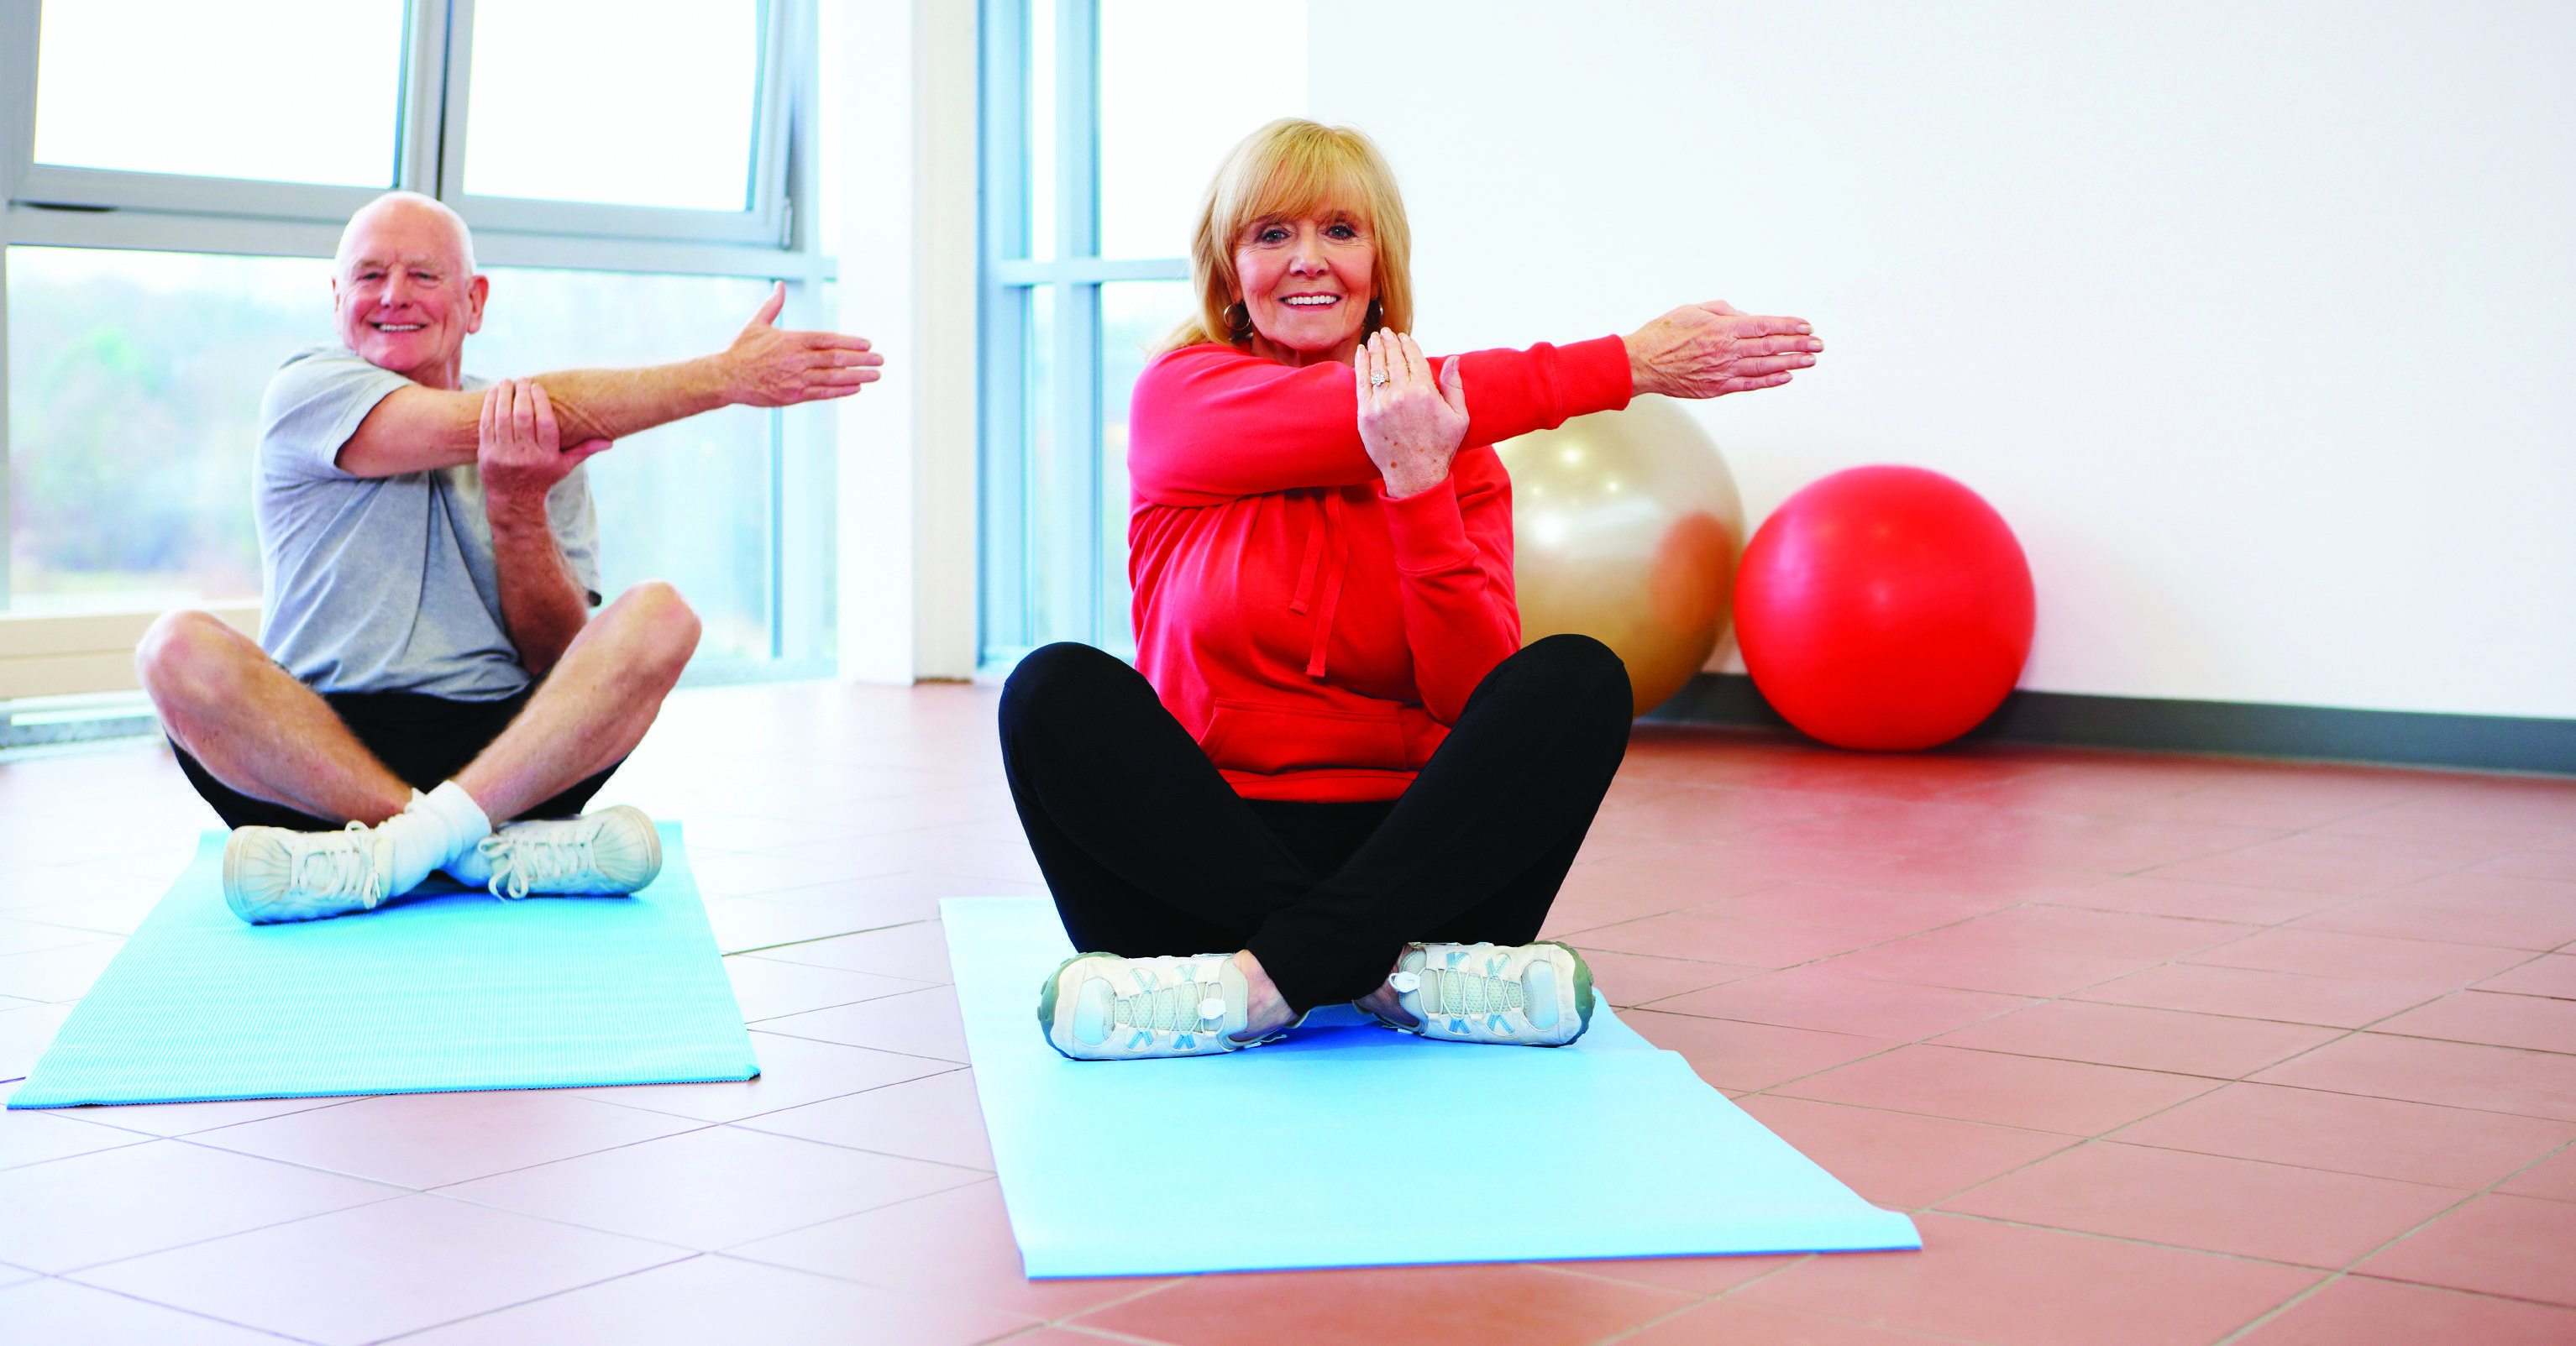 Йога для пожилых: комплексы упражнений для выполнения в домашних условиях - для начинающих, в 50 лет, в 60 лет, от артура паллаха, от бессонницы